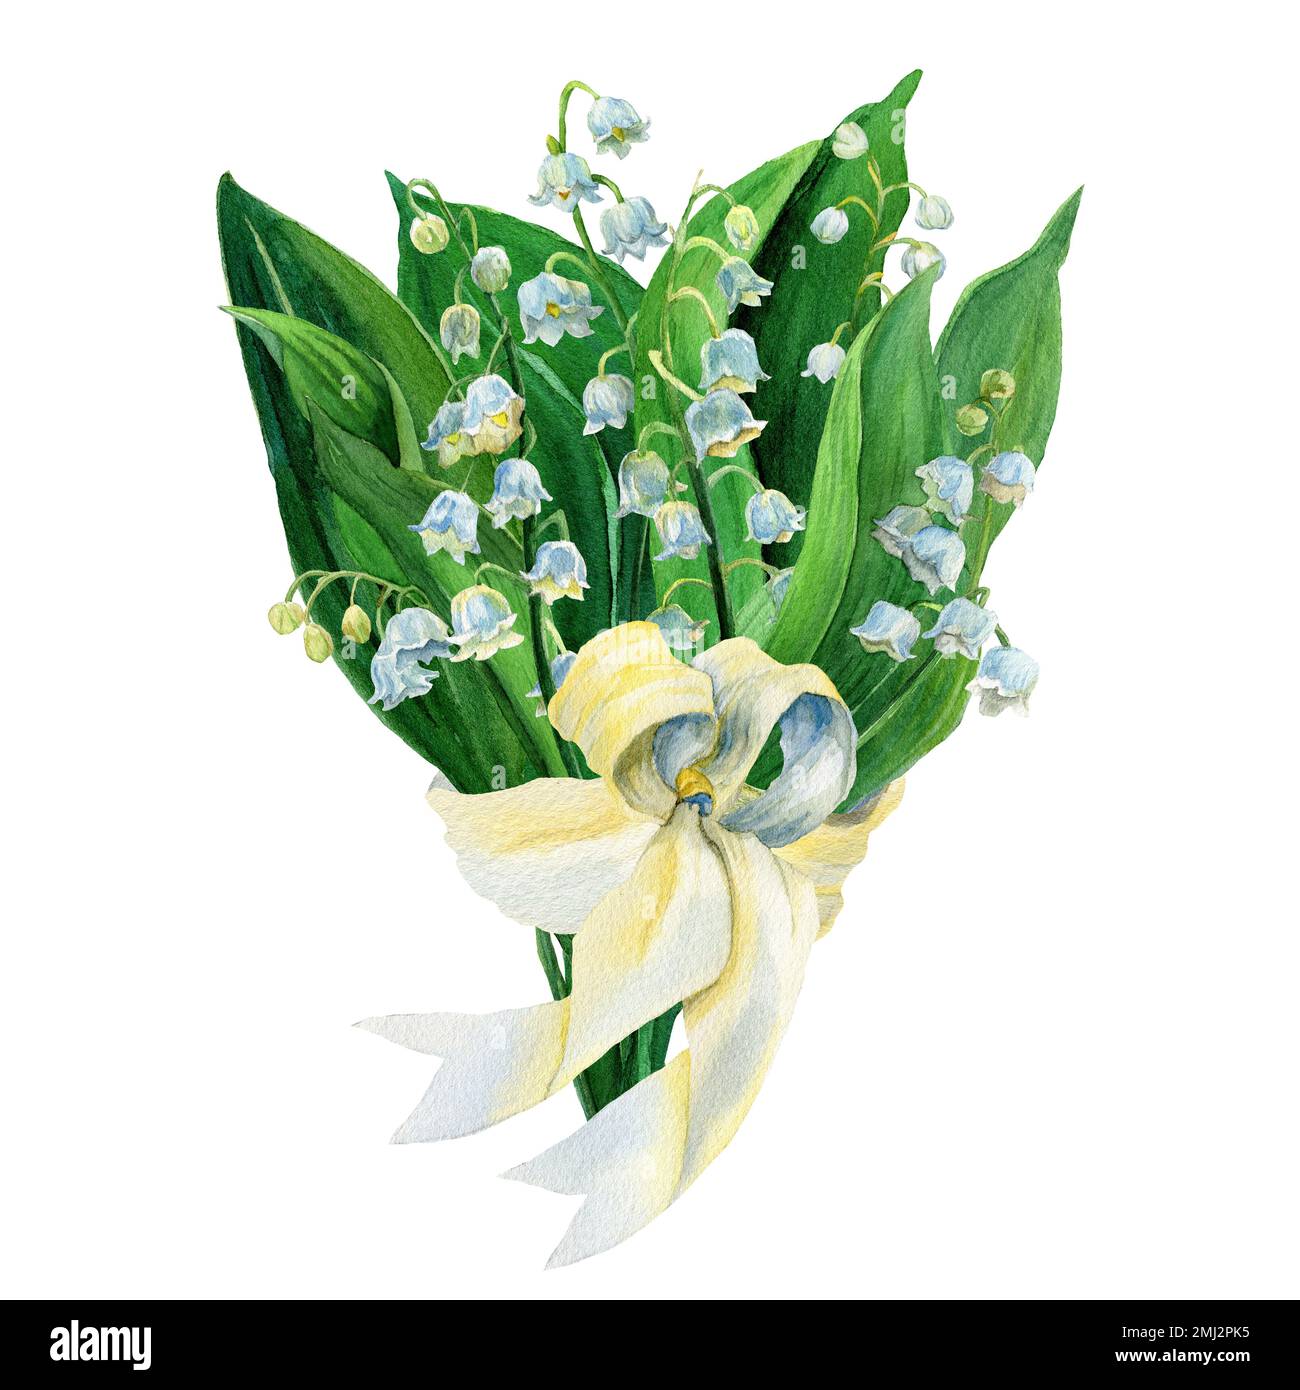 Aquarelle dessin à la main Illustration du nénuphars du bouquet de vallée isolé. Composition des fleurs blanches et des feuilles vertes. Première fleur de printemps avec ruban Banque D'Images